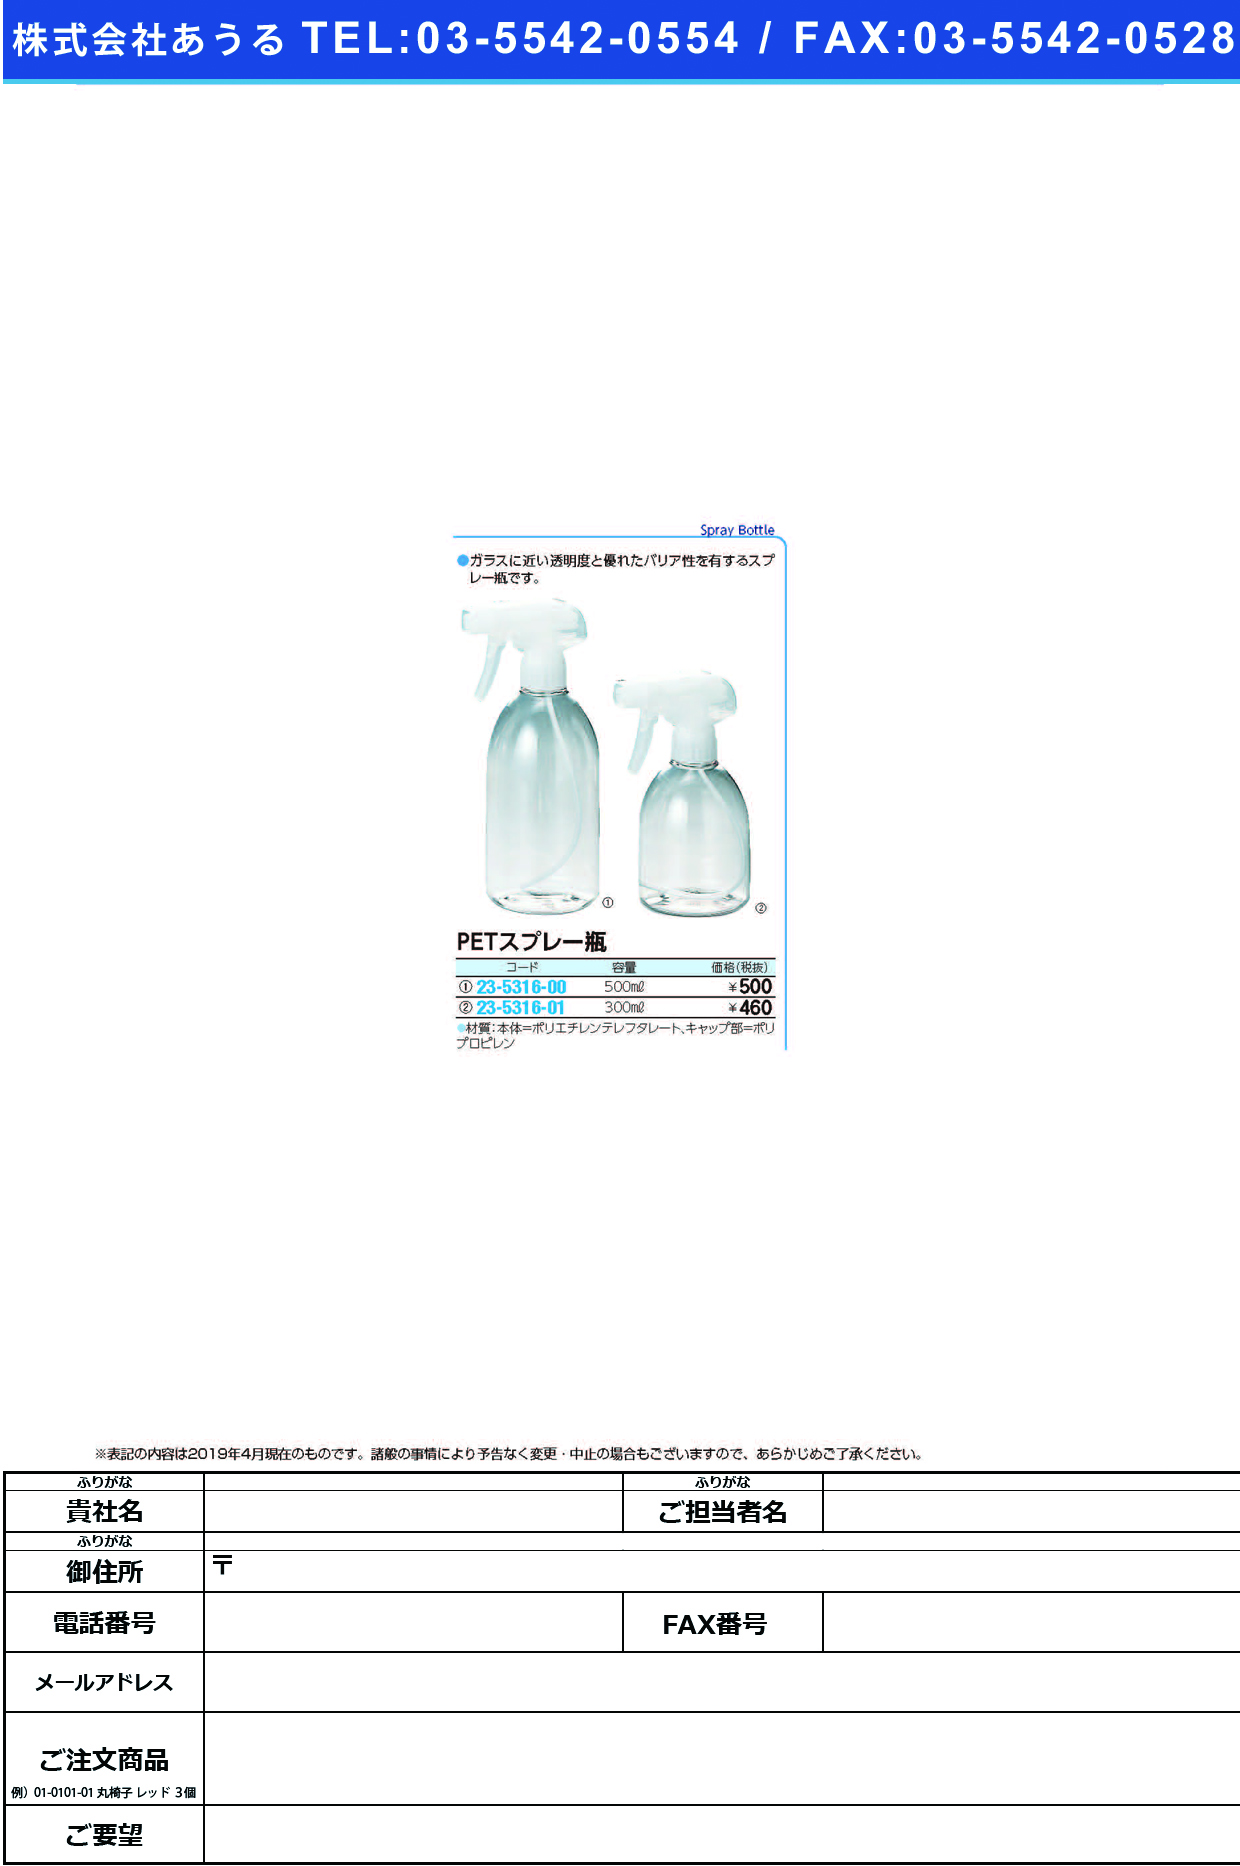 (23-5316-01)ＰＥＴスプレー瓶 10-121-02(300ML) PETｽﾌﾟﾚｰﾋﾞﾝ【1本単位】【2019年カタログ商品】